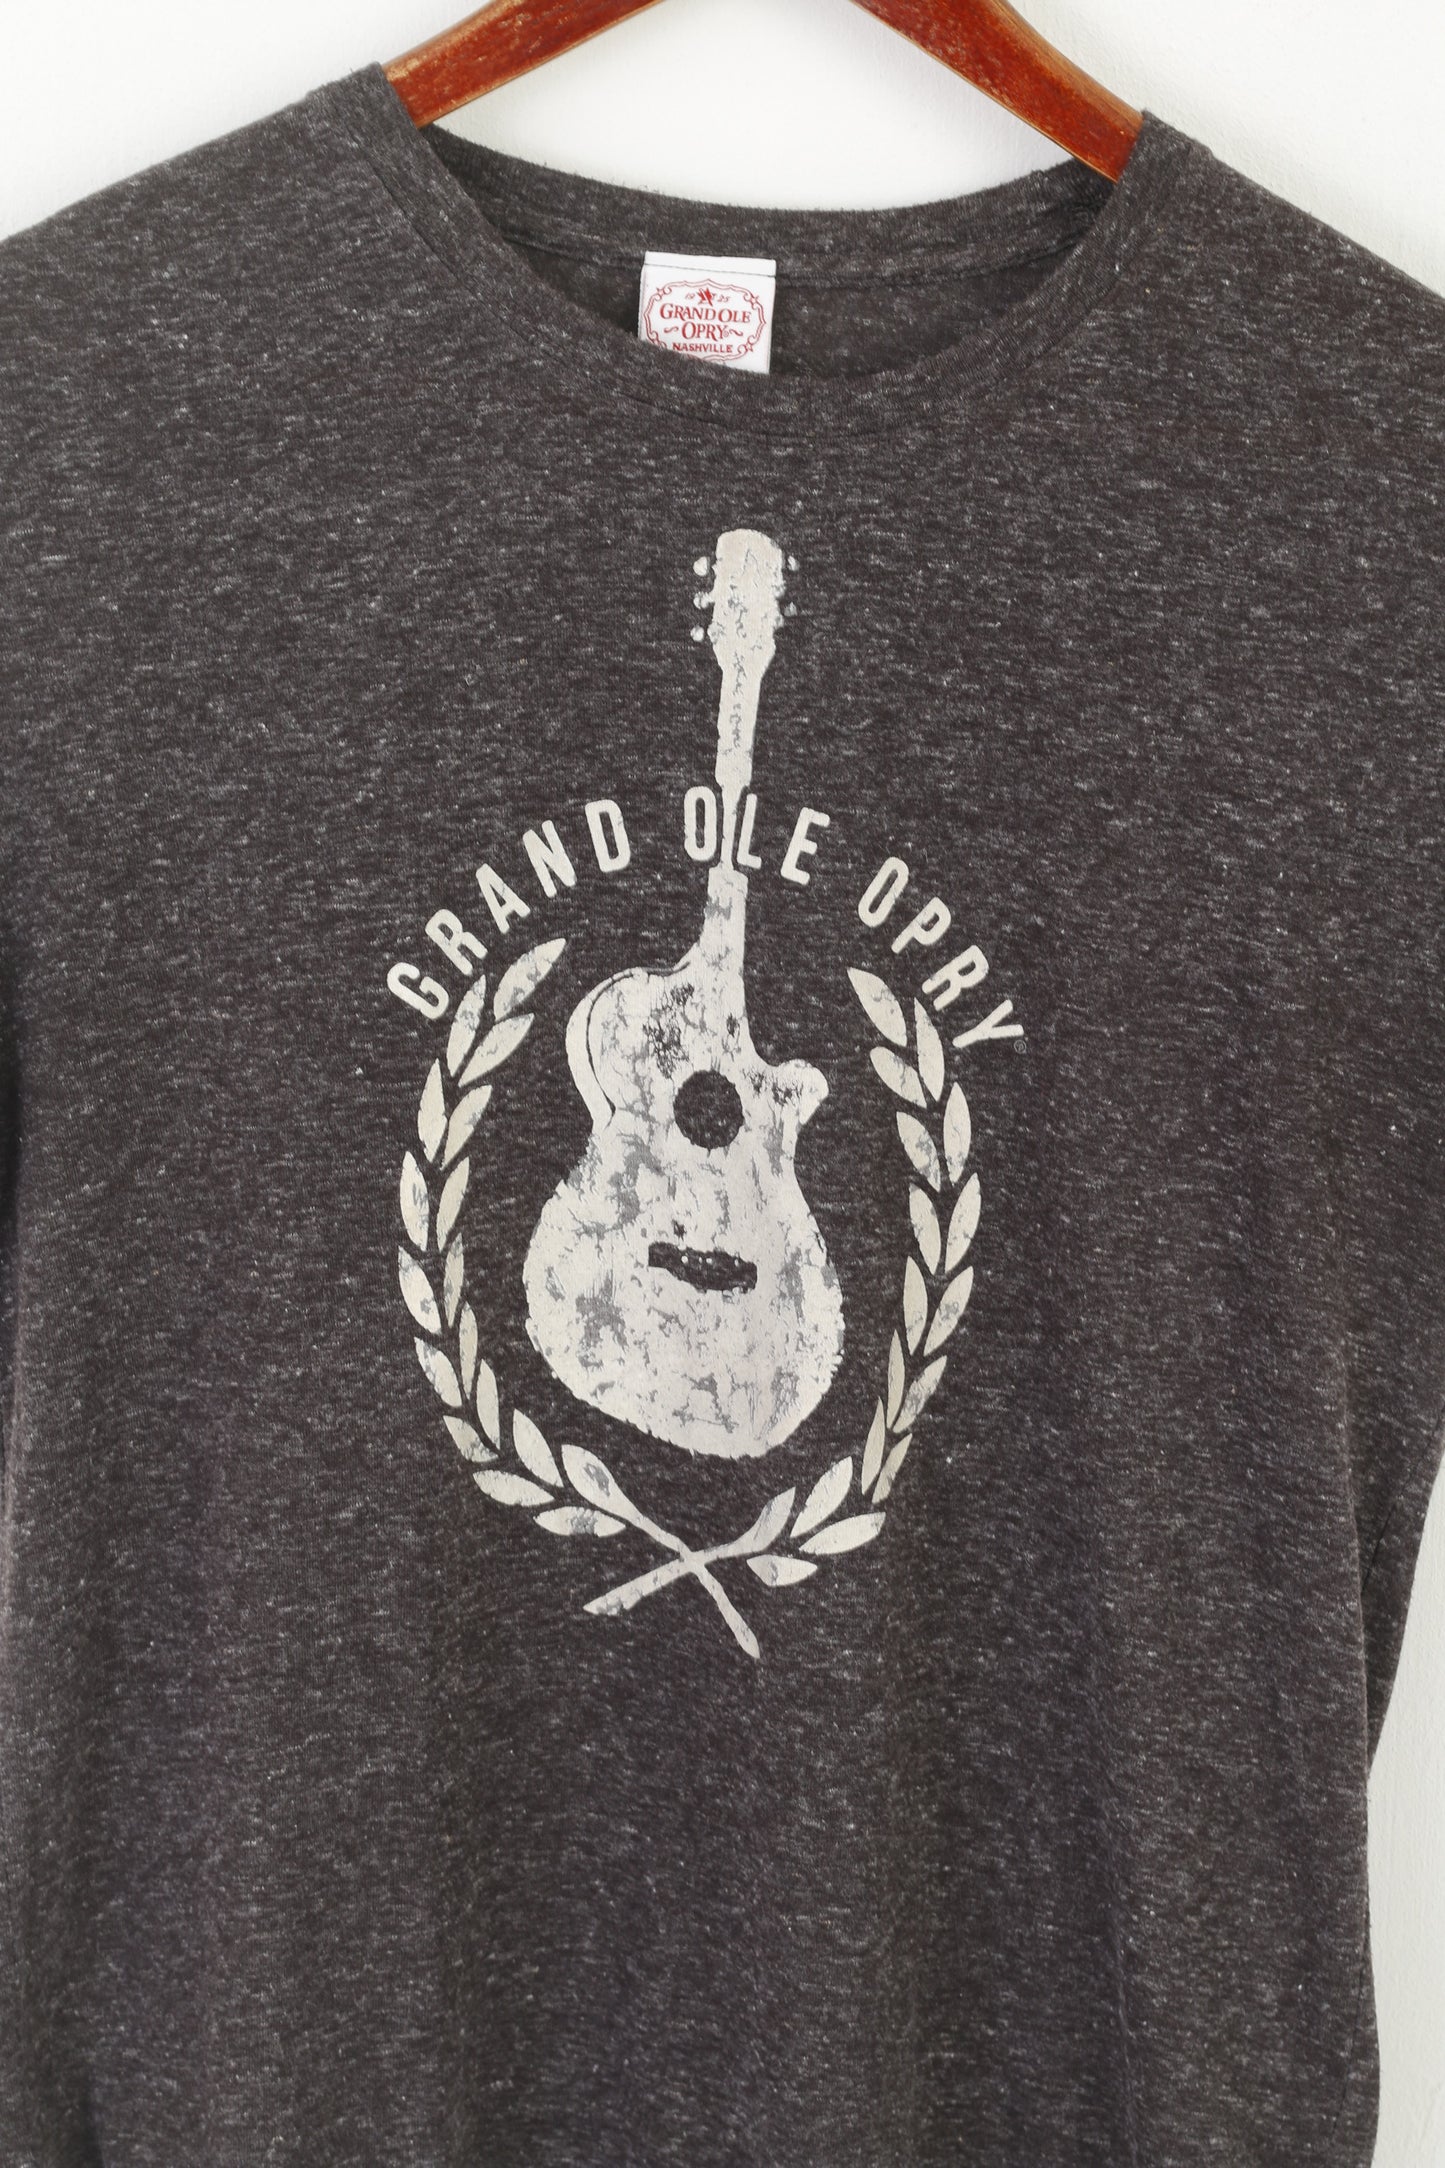 Grandole Nashville Femme L T-Shirt Gris Coton Graphique Grand Ole Opry Top